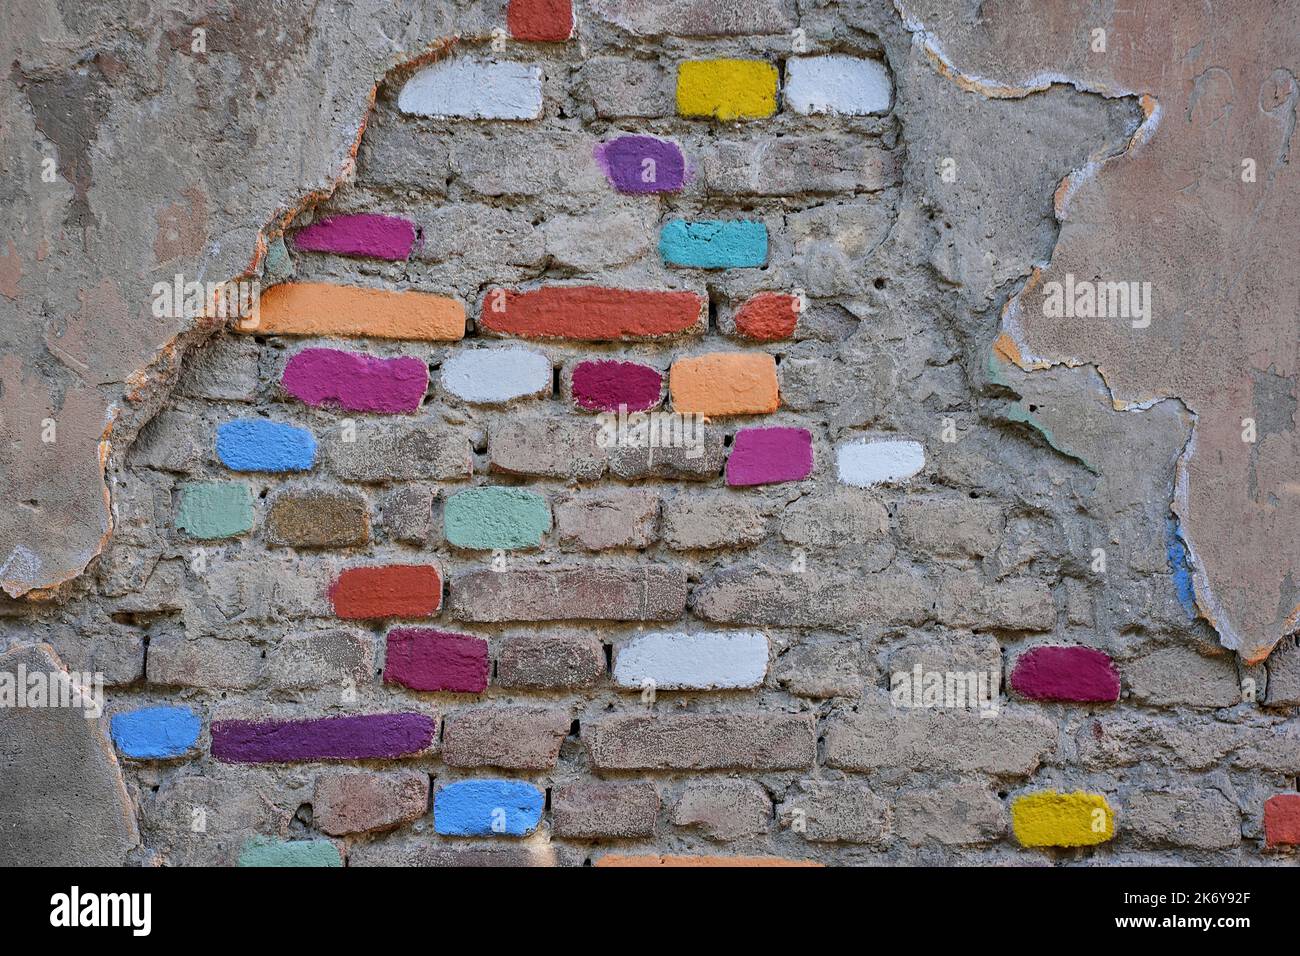 Wand mit beschädigtem Putz und bunt angemalten Ziegelsteinen, mittelalterliches Stadtzentrum Kala, Altstadt, Tiflis, Georgien Stock Photo